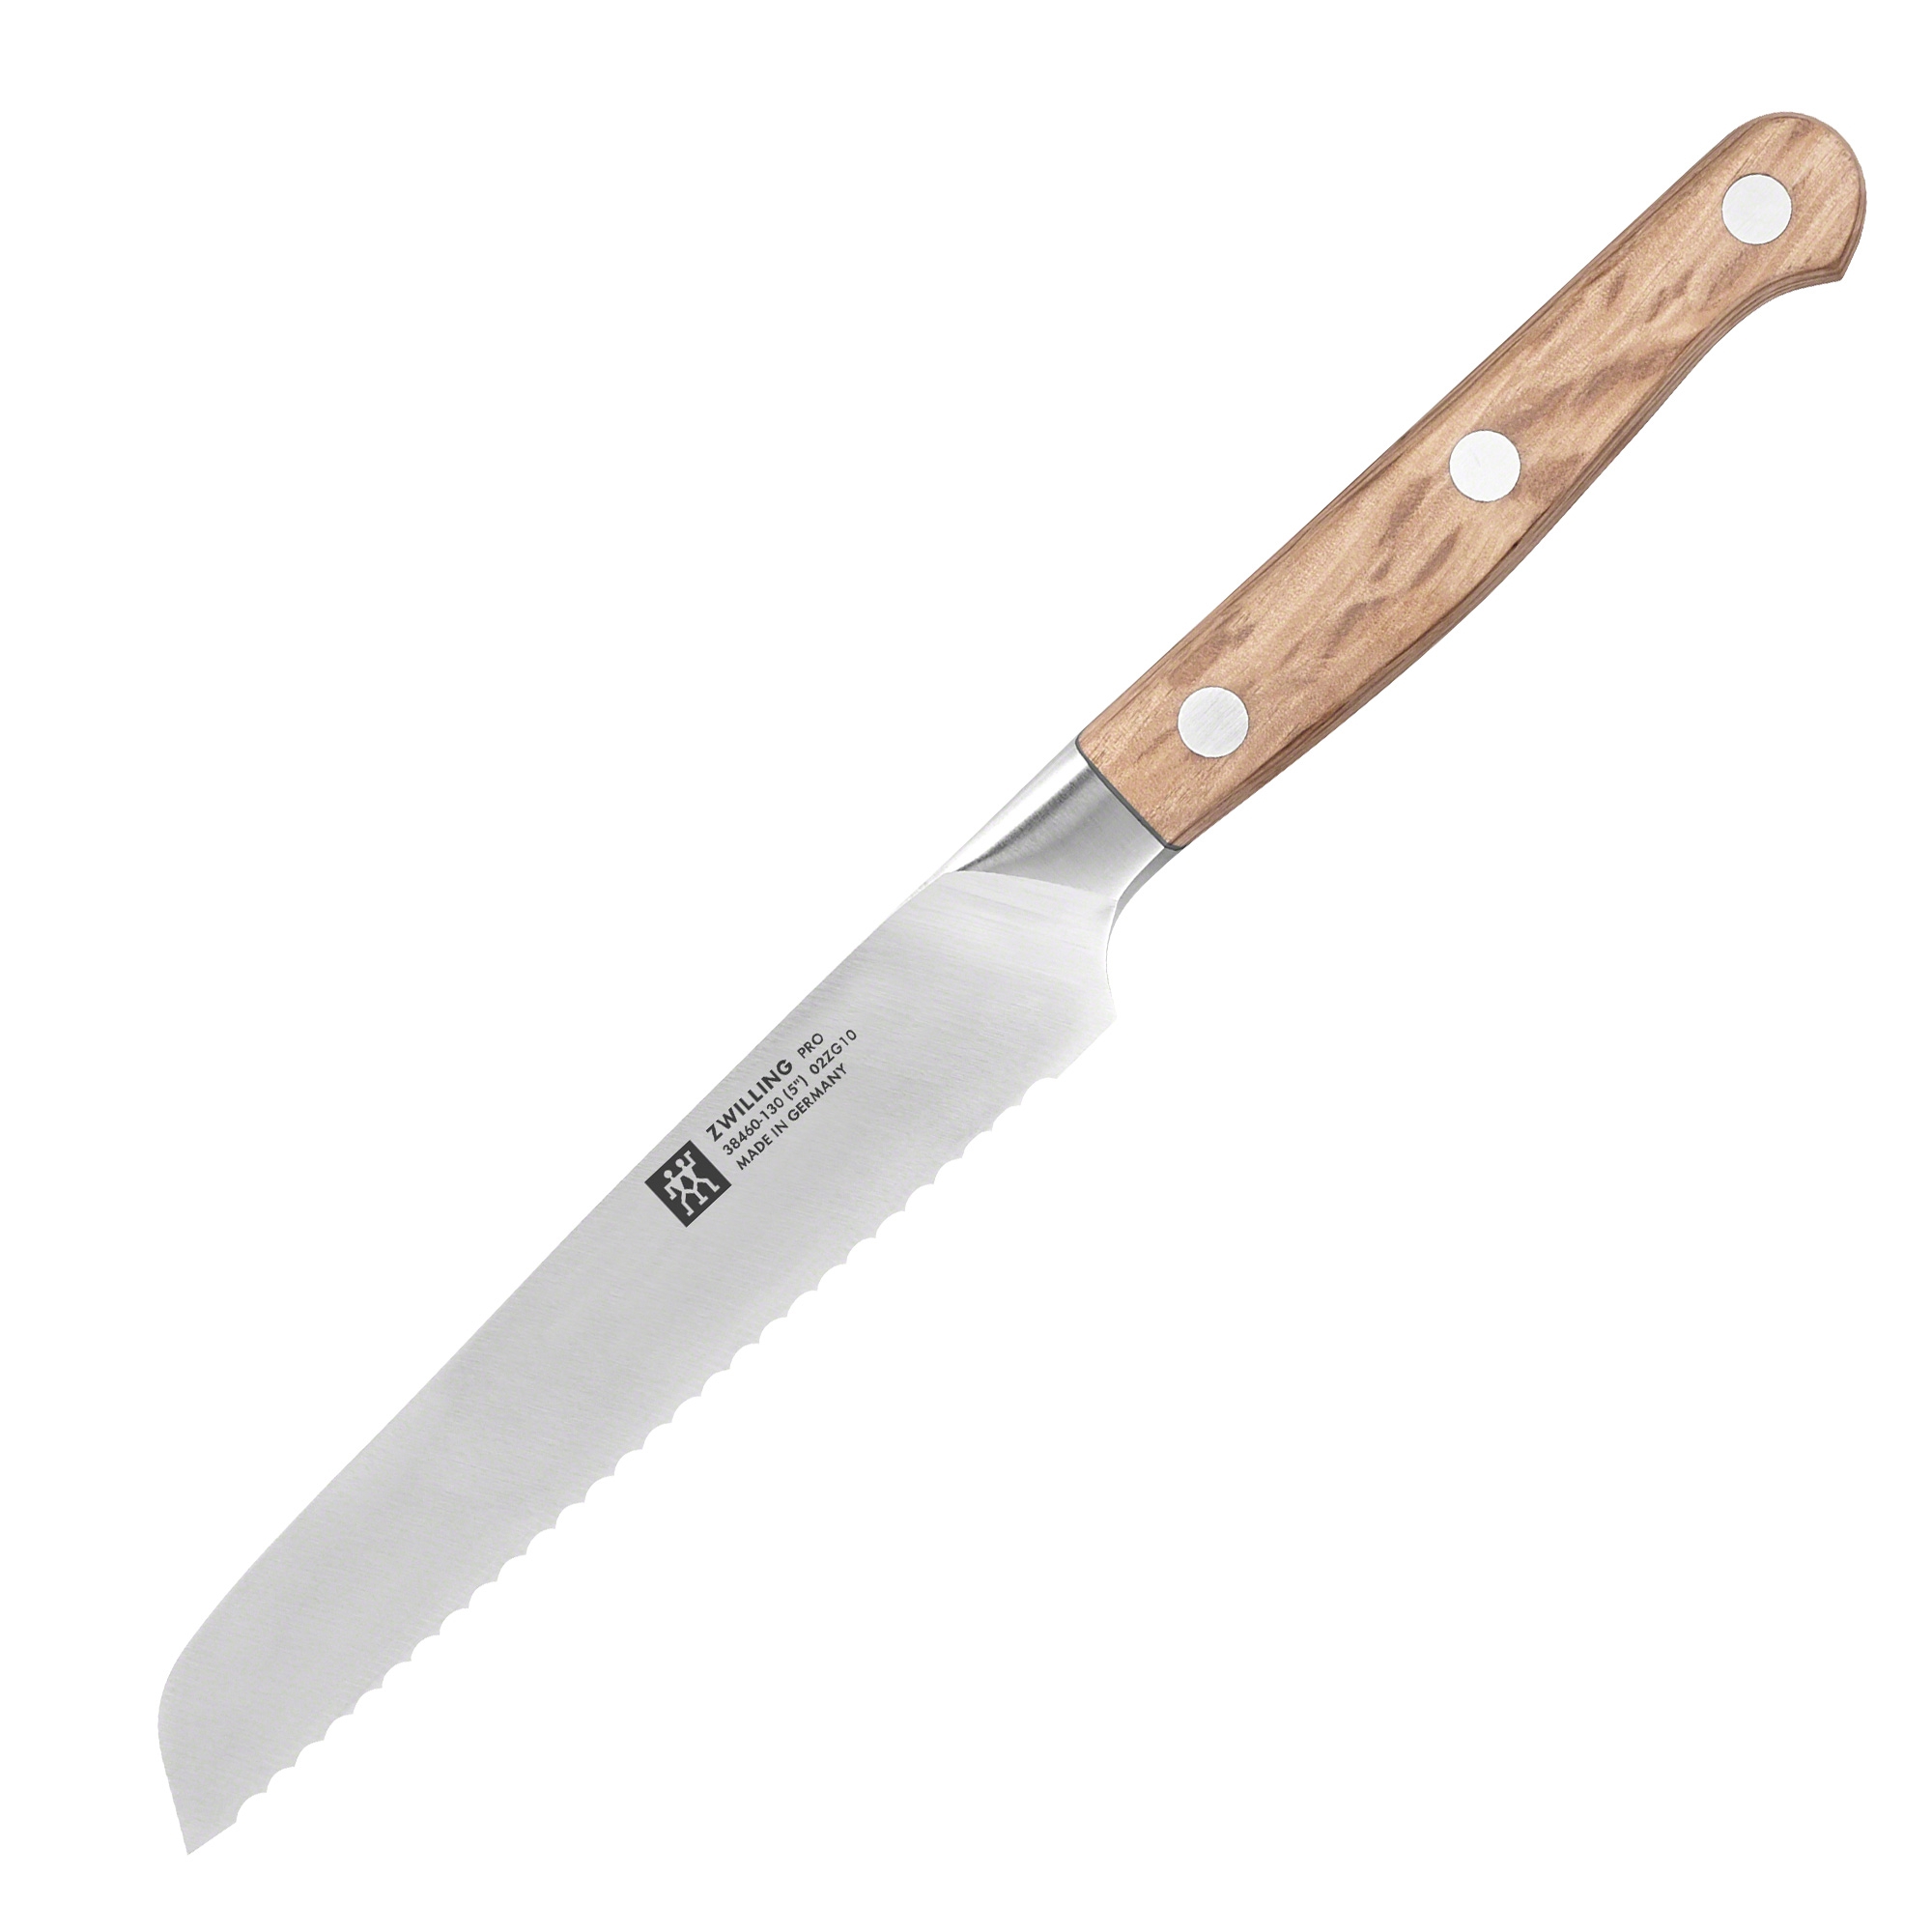 Zwilling - Pro Wood - Utility Knife, 13cm